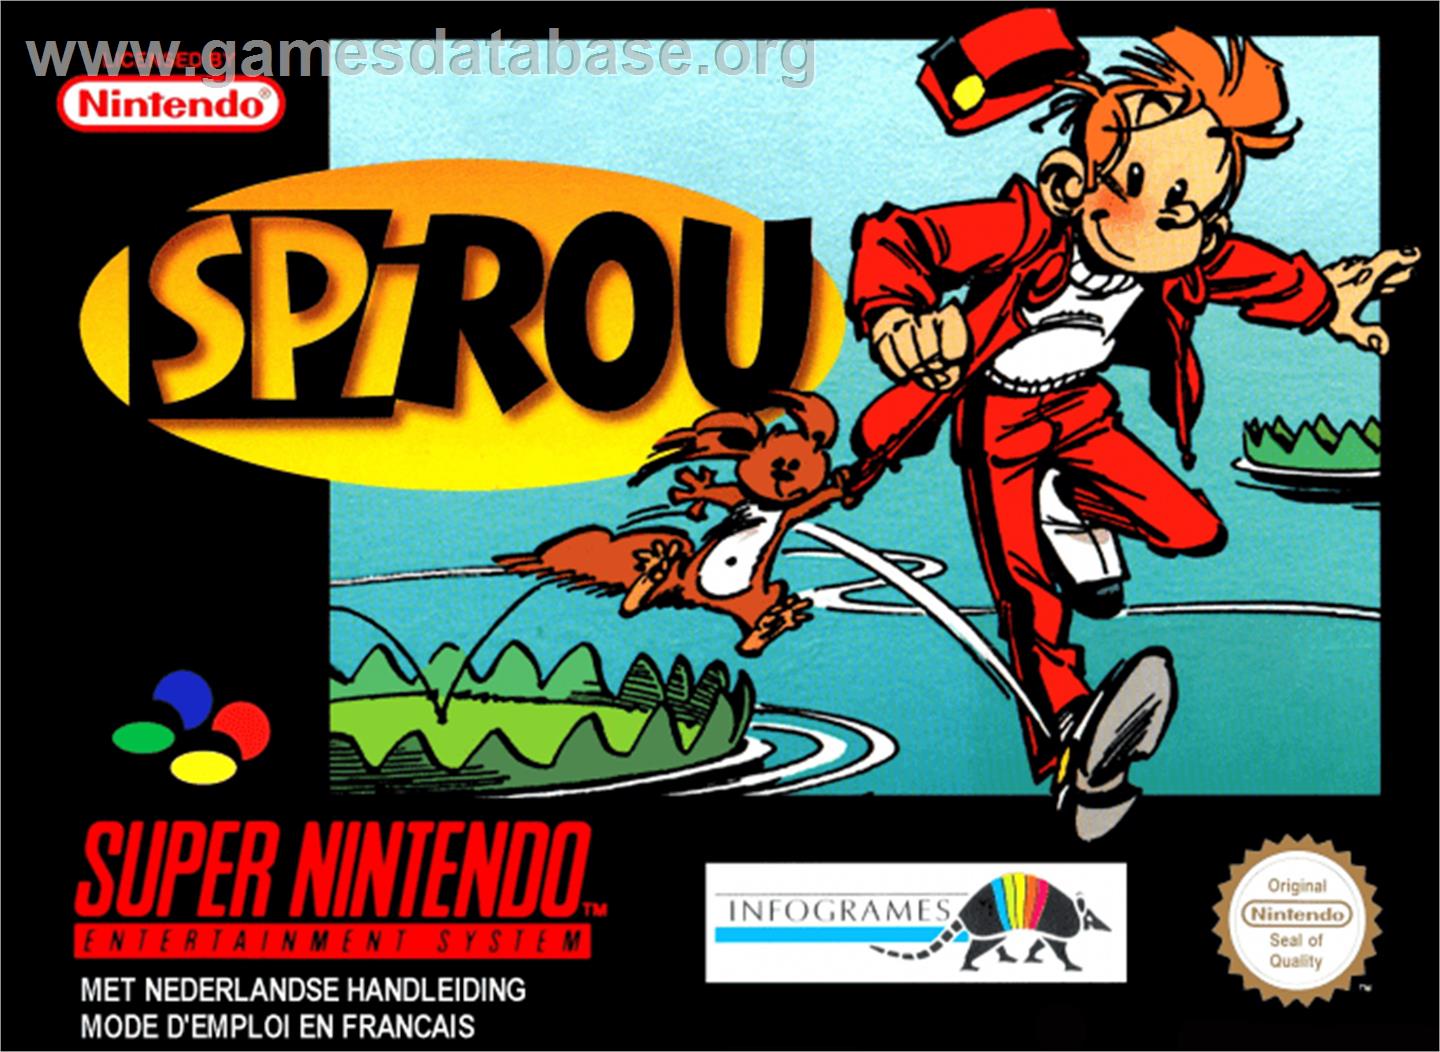 Spirou - Nintendo SNES - Artwork - Box